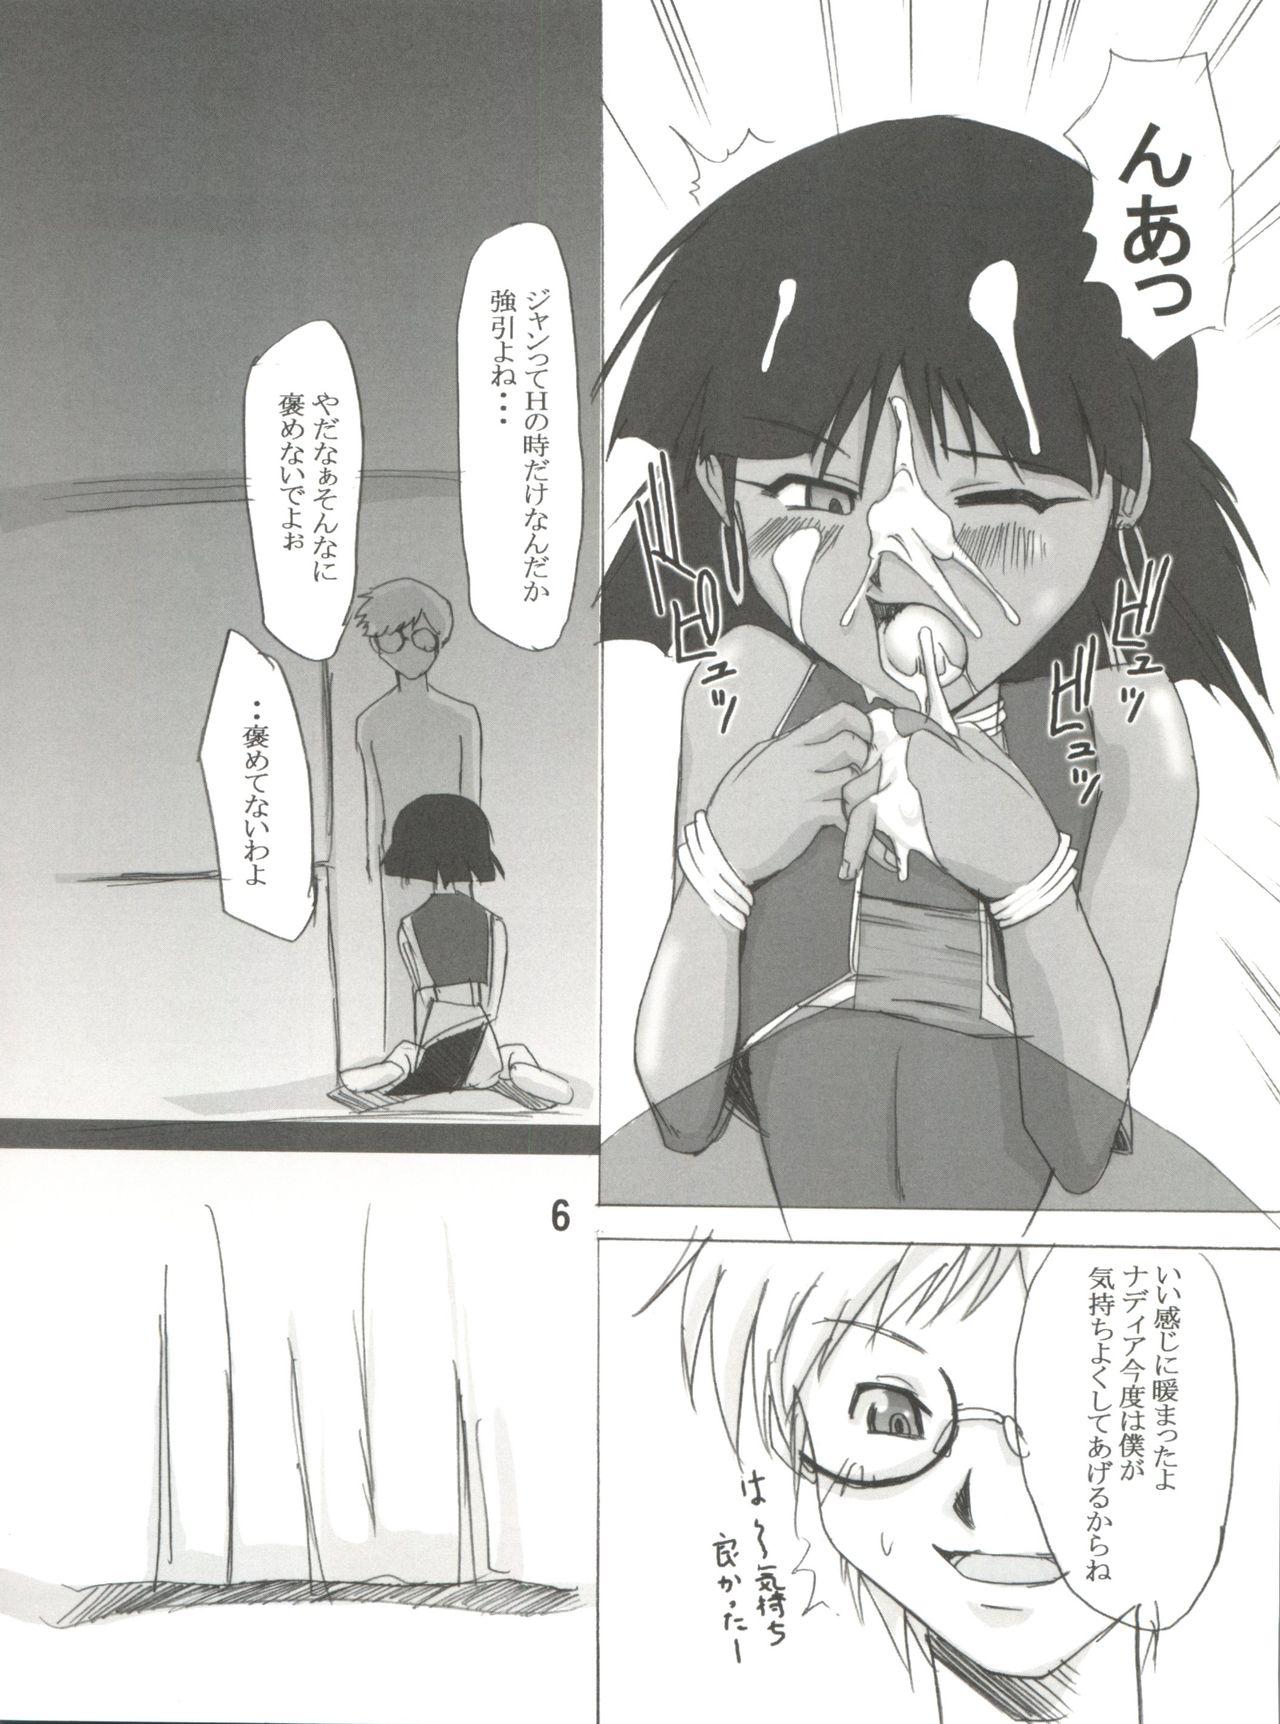 Orgy @NADIA - Fushigi no umi no nadia Clit - Page 6